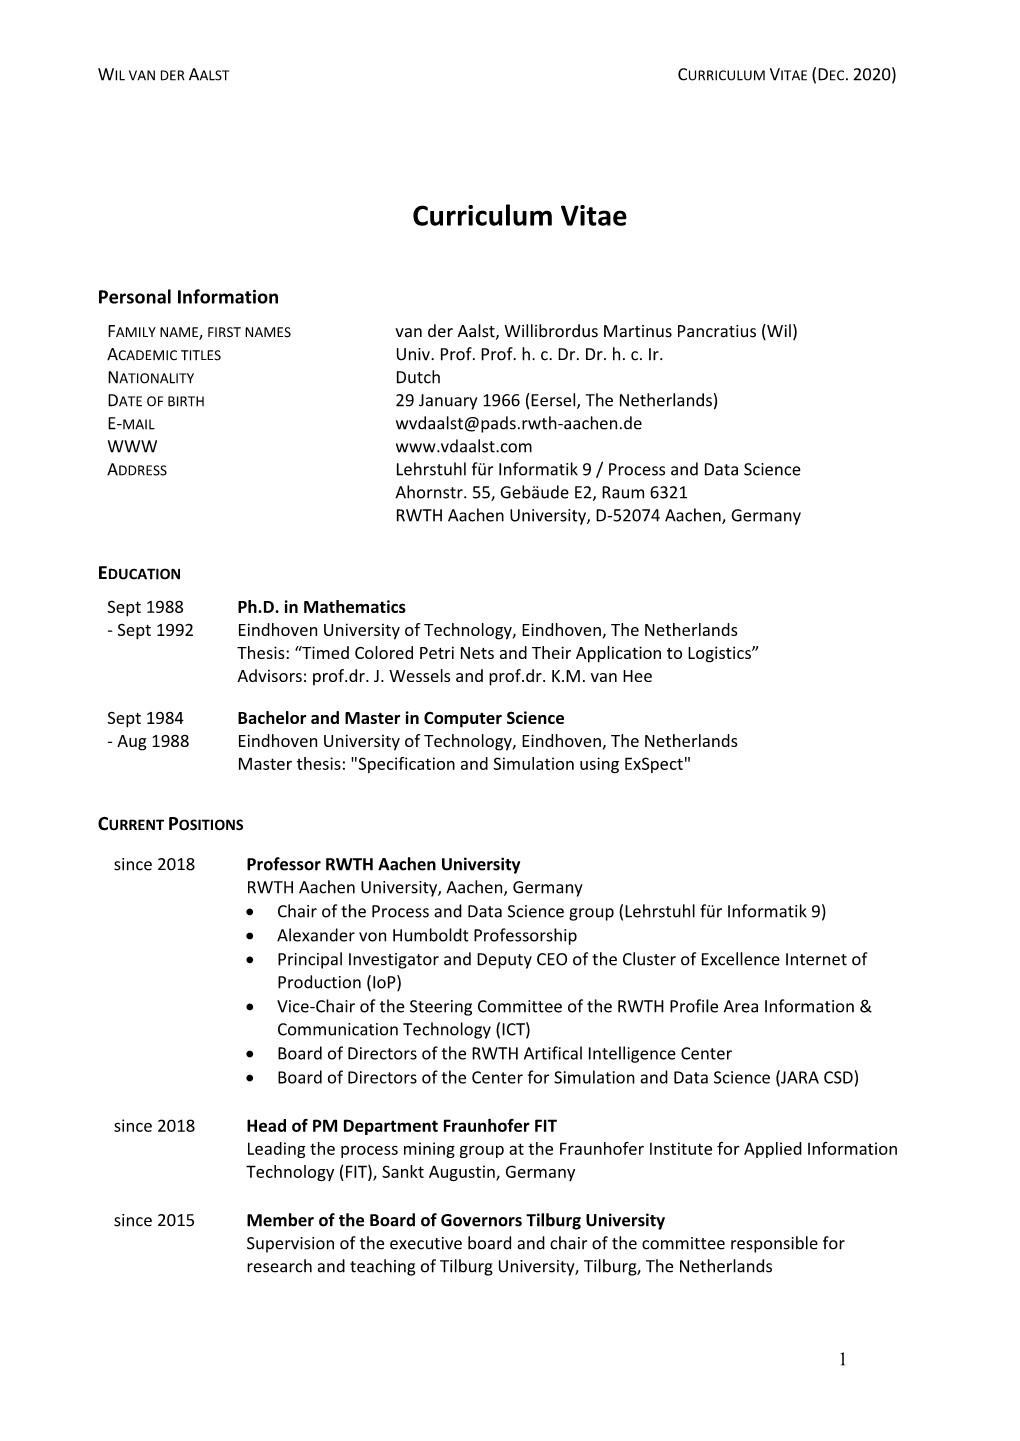 Curriculum Vitae (PDF, 4 Pages)